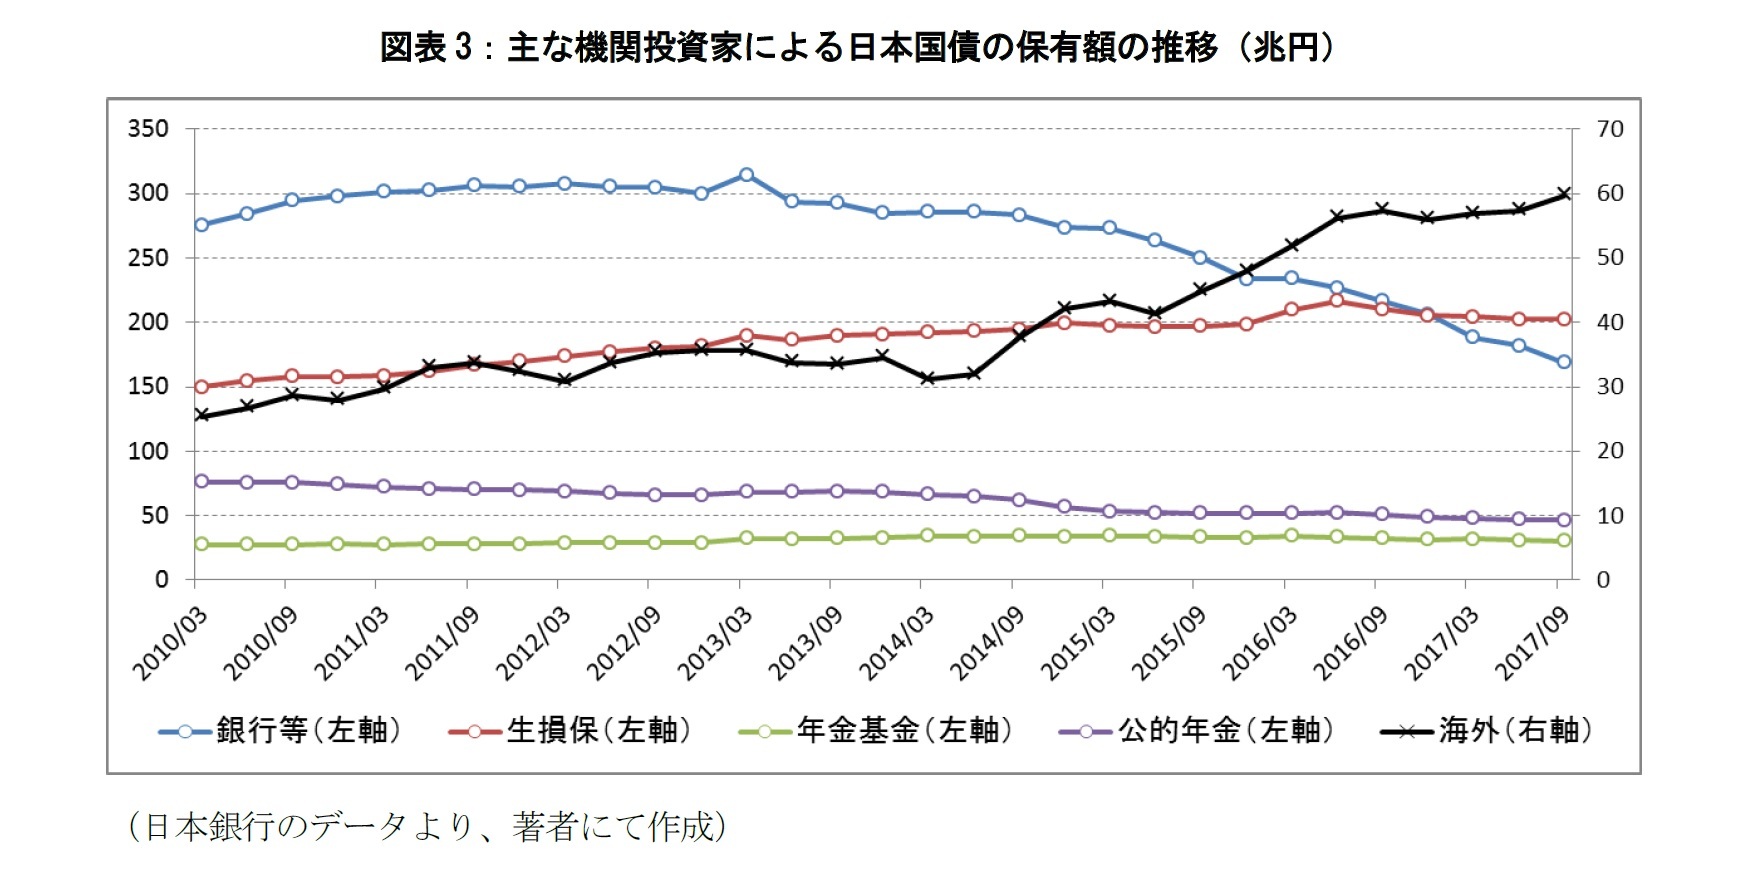 図表3：主な機関投資家による日本国債の保有額の推移（兆円）